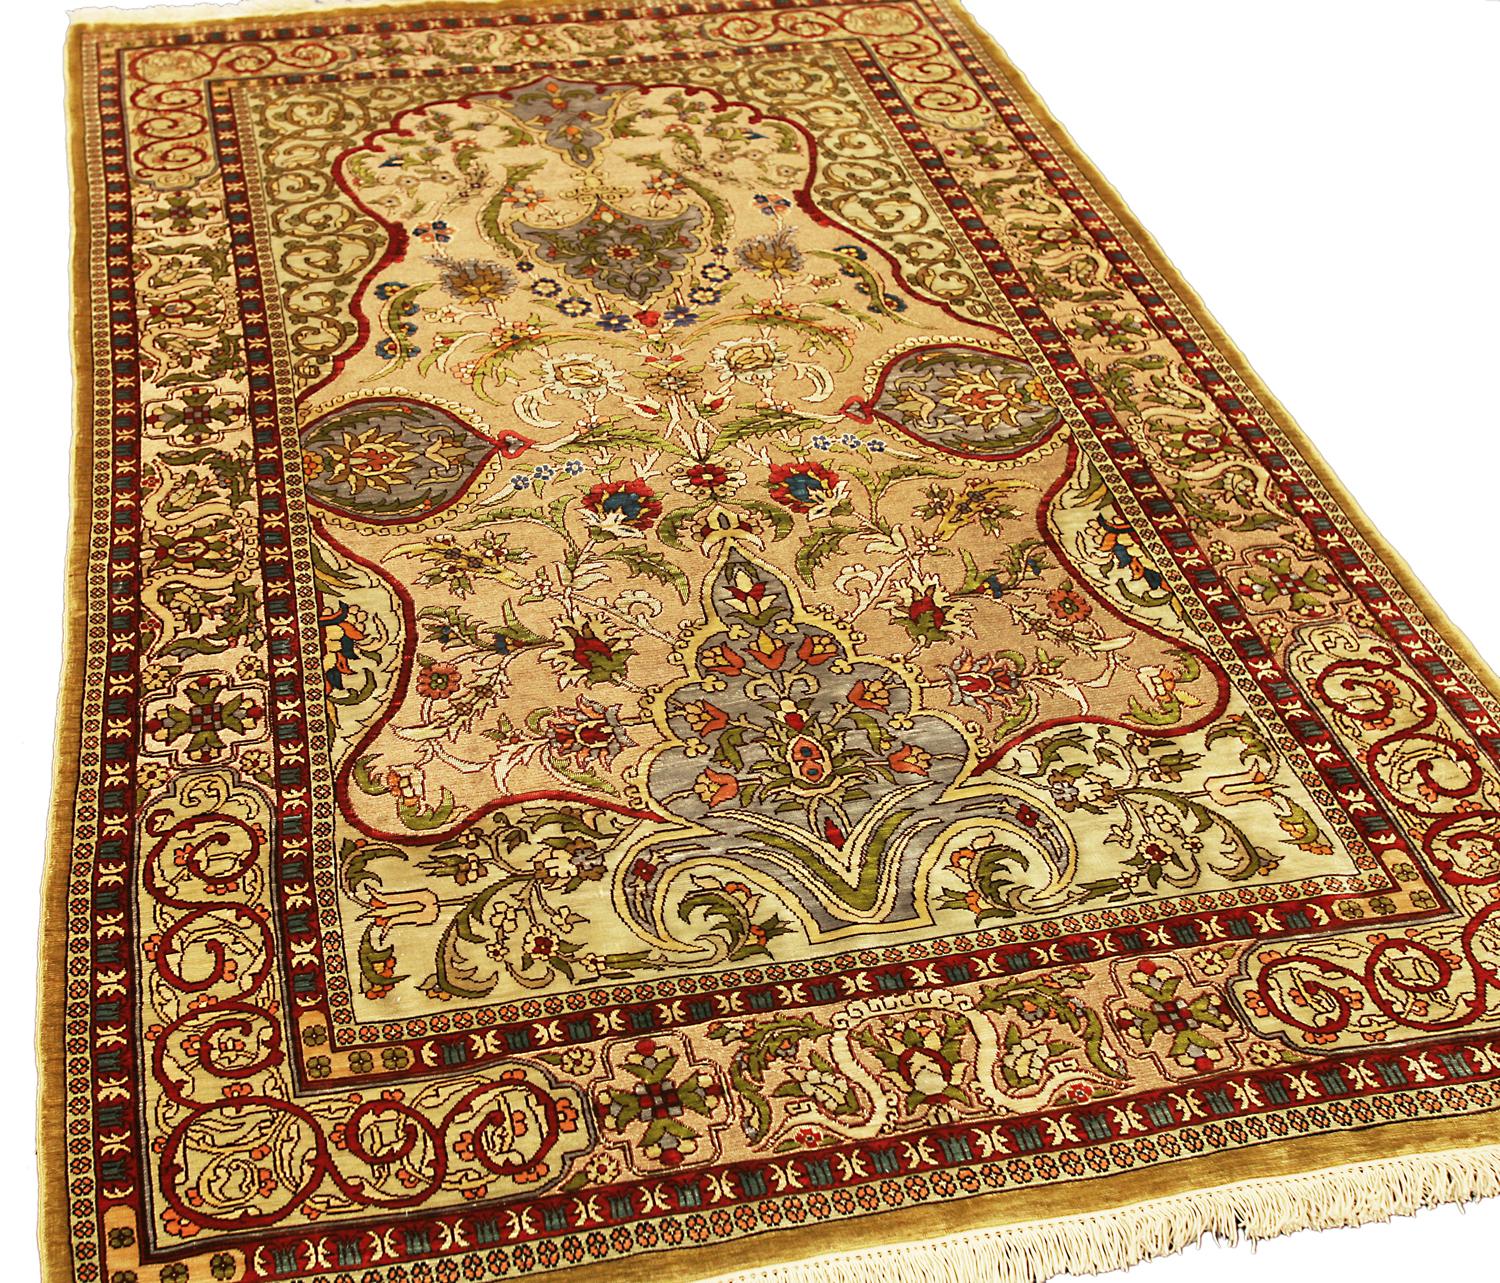 Dies ist ein türkischer Hereke-Teppich mit Seiden- und Metallfäden, der zu Beginn des 21. Jahrhunderts in der Türkei gewebt wurde (ca. 2000-2010) und 150 x 95 cm groß ist. 
Das zartbeige Feld mit gezackten Palemtten, Palettenkartuschen, polychromen